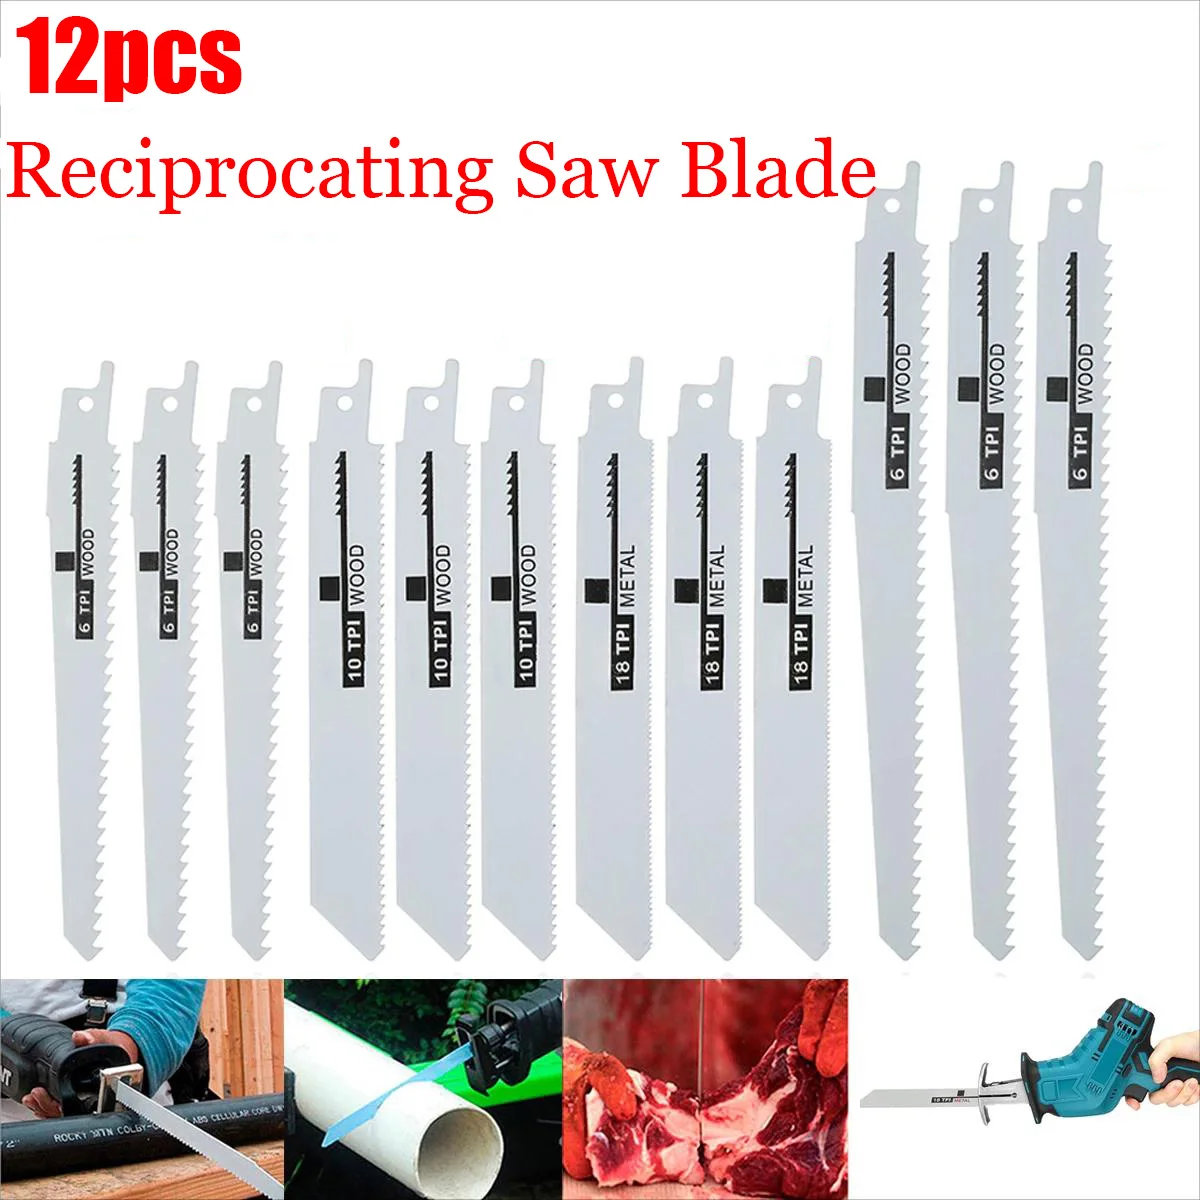 

12pcs Reciprocating Saw Blades Saber Saw Handsaw Multi Saw Blade for Cutting Wood Metal for Bosch Makita Dewalt DIY Tools